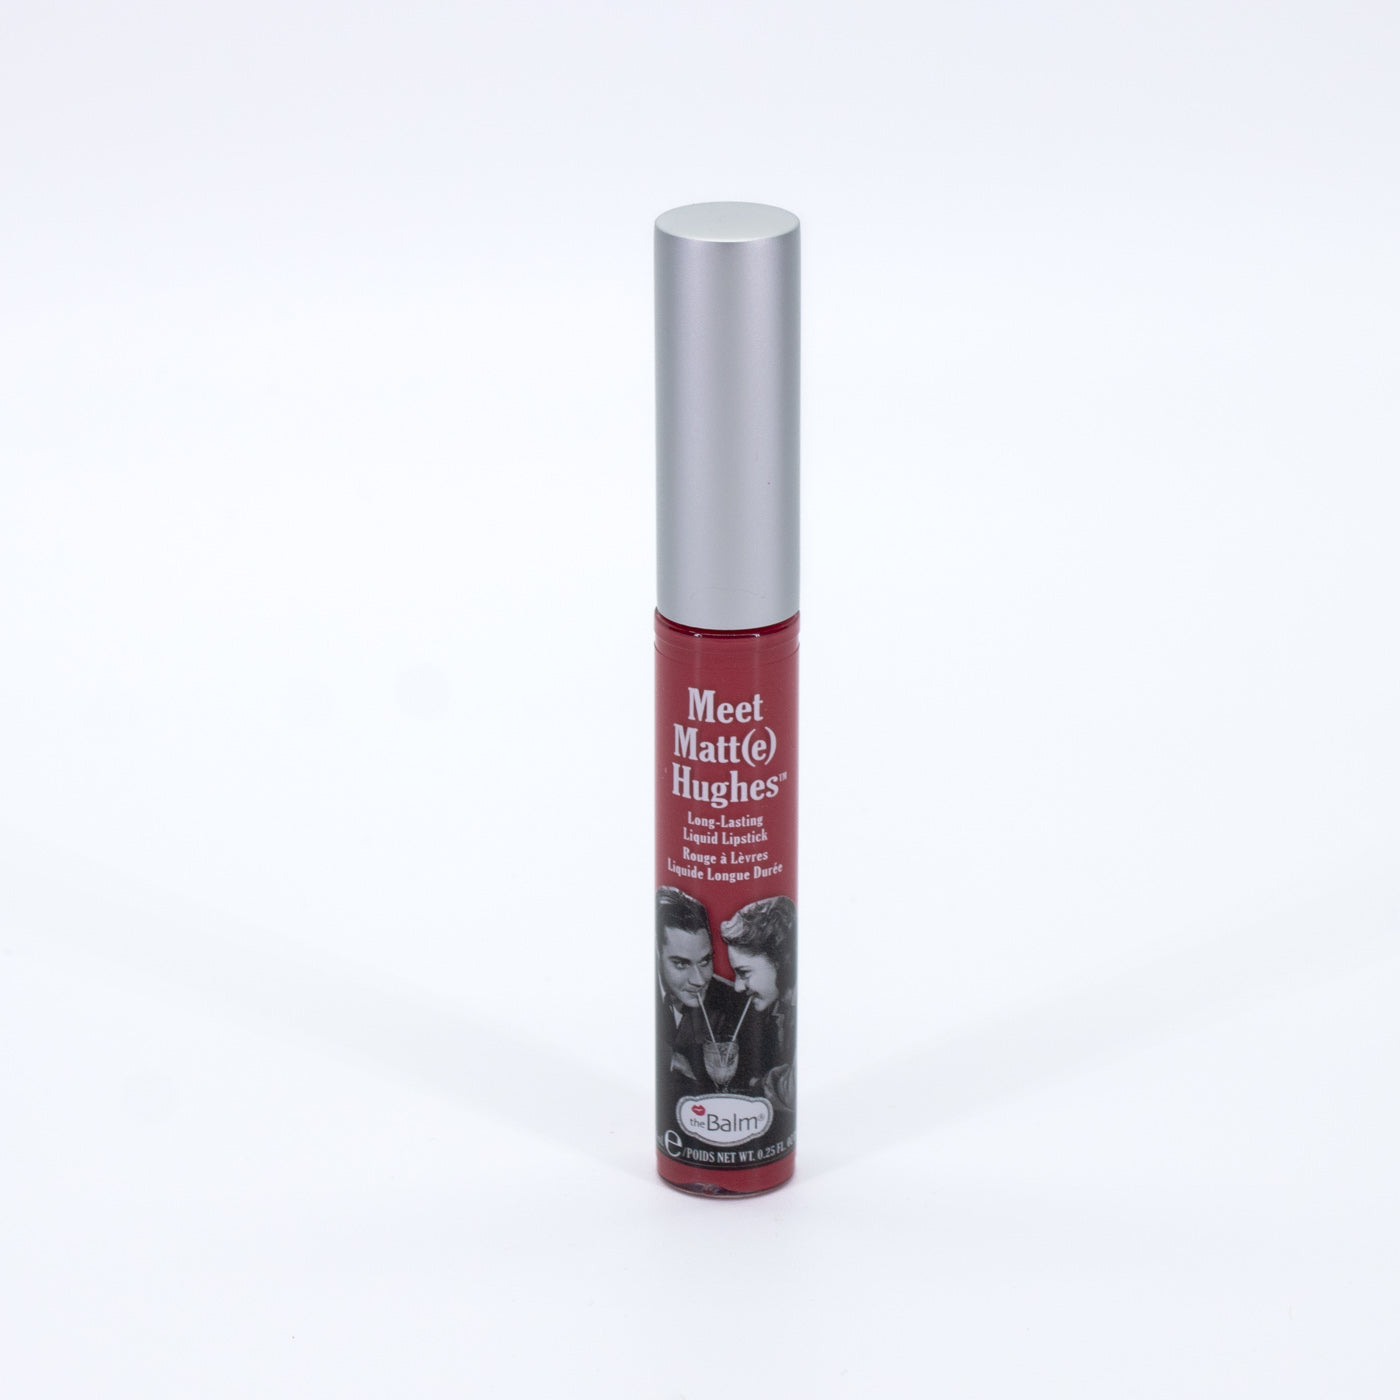 theBalm Meet Matte Hughes Liquid Lipstick SENTIMENTAL 0.25oz - New